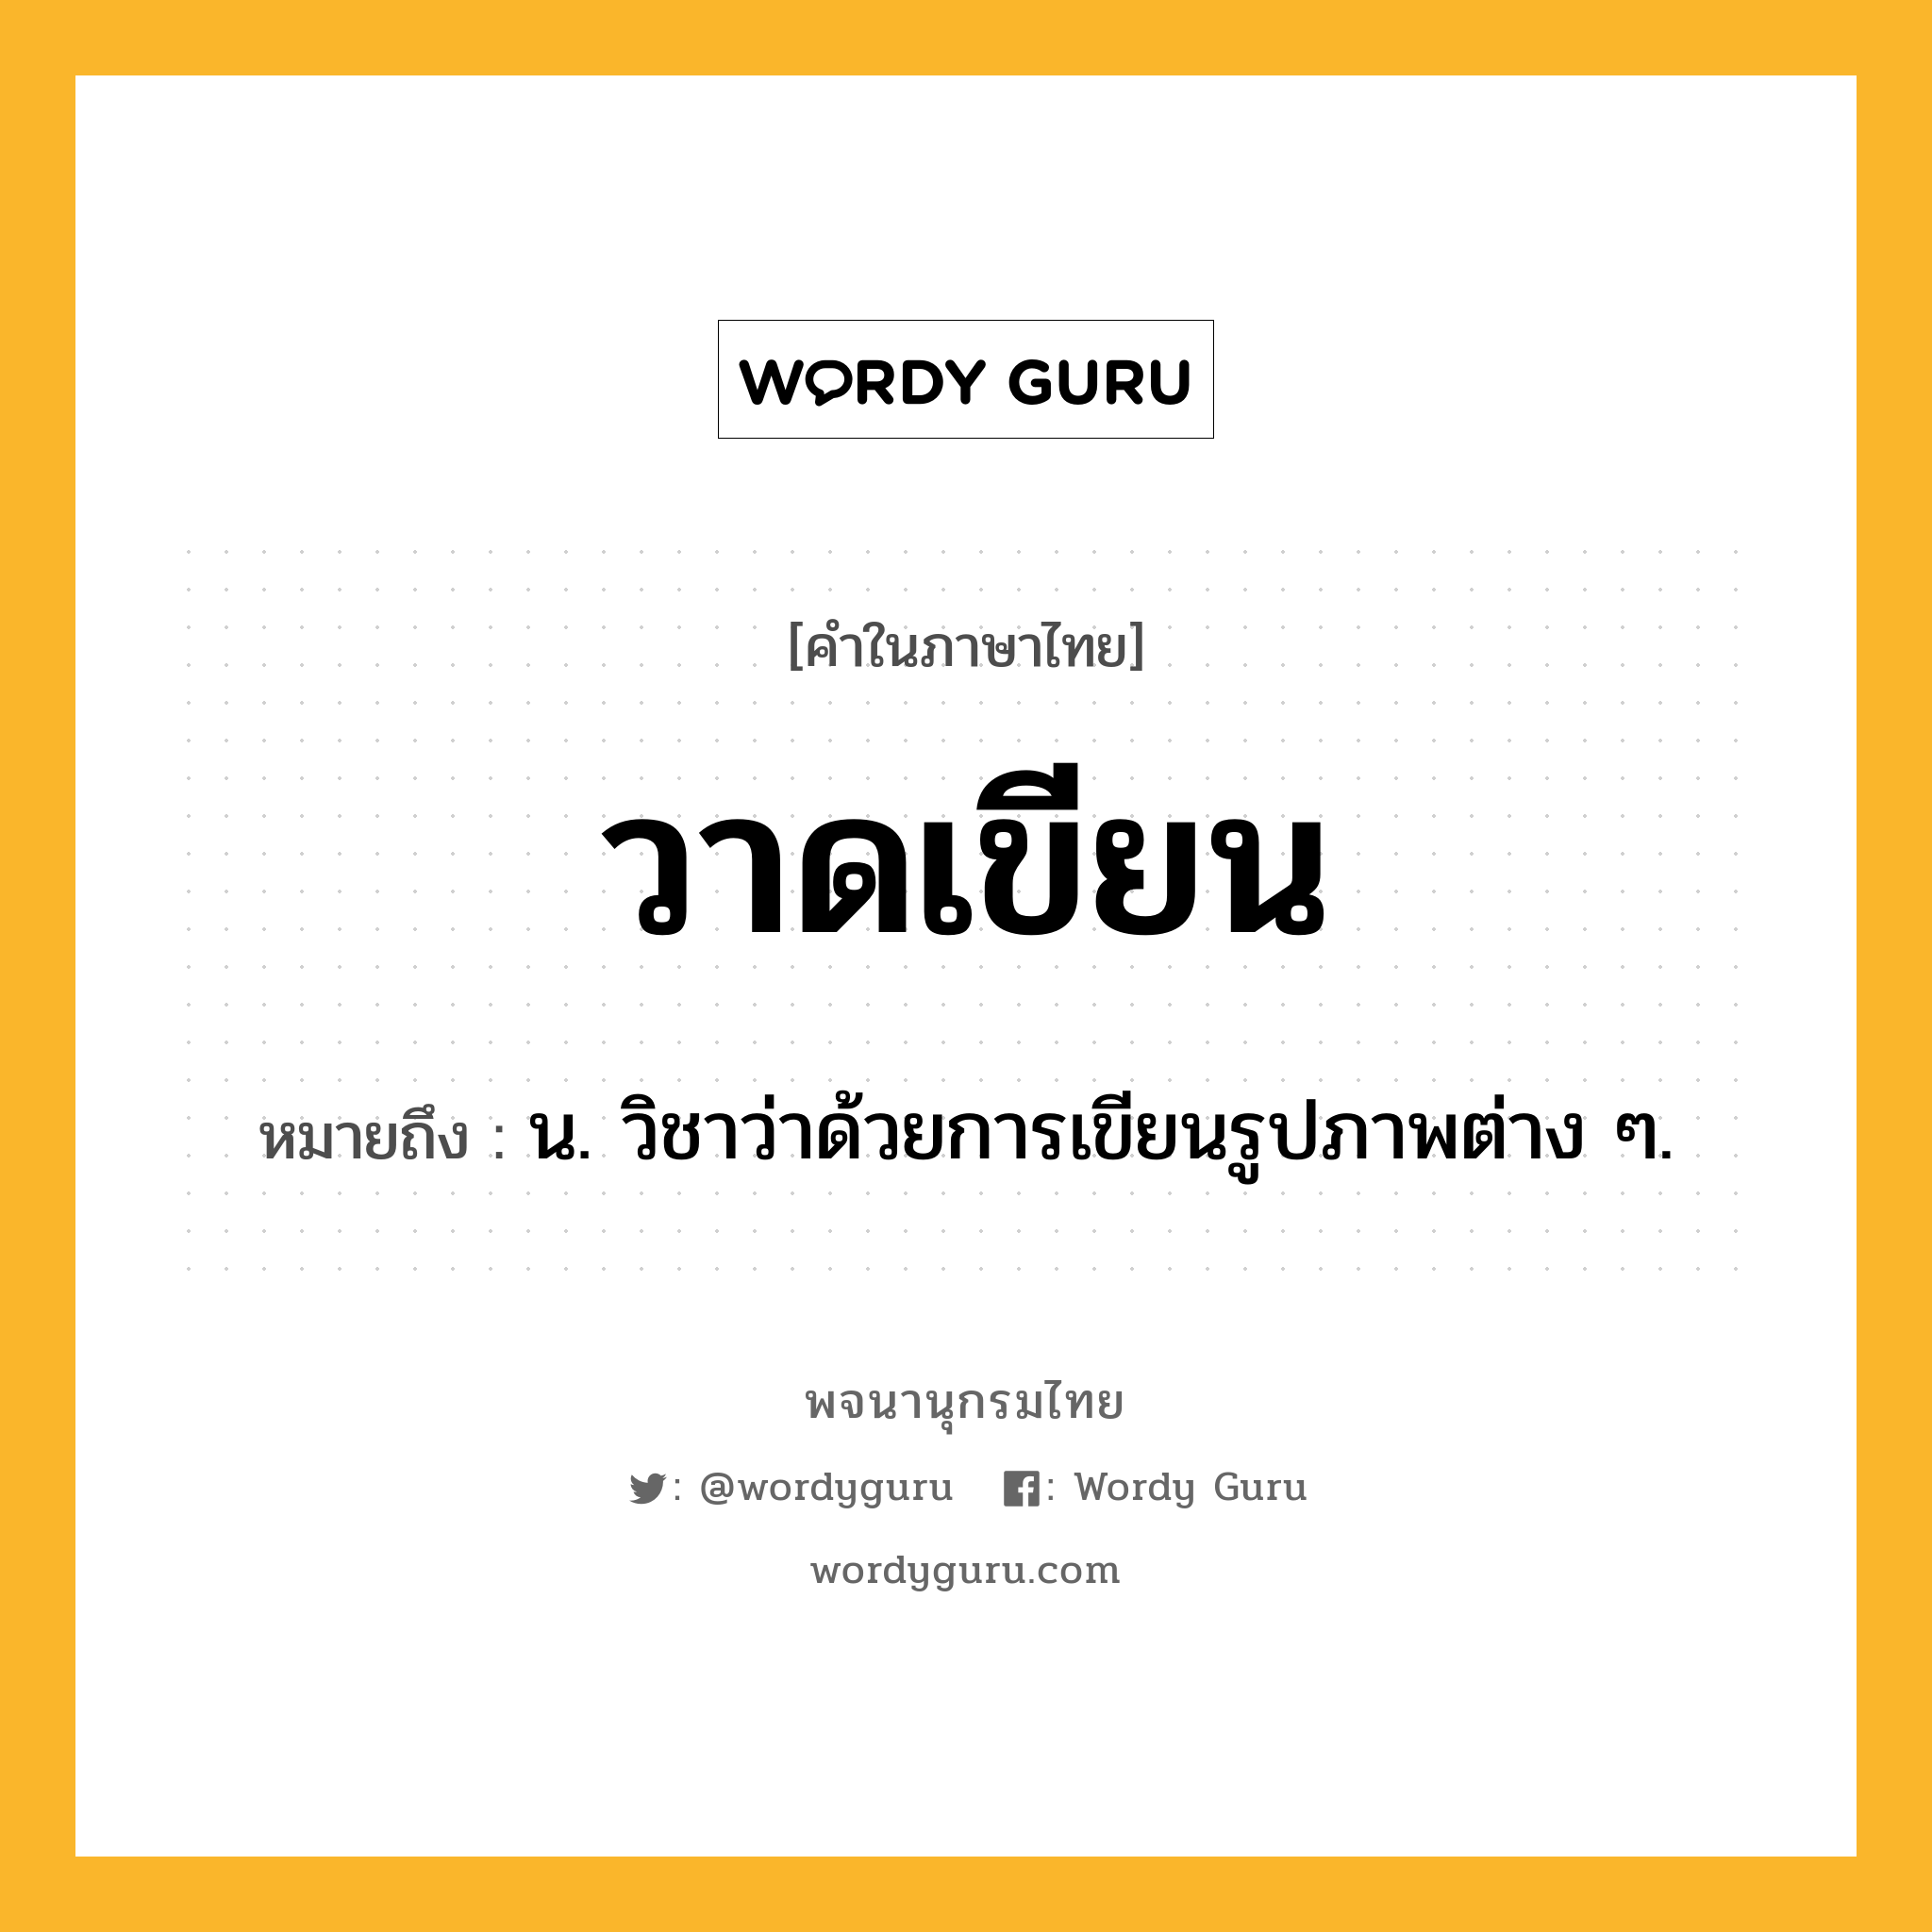 วาดเขียน ความหมาย หมายถึงอะไร?, คำในภาษาไทย วาดเขียน หมายถึง น. วิชาว่าด้วยการเขียนรูปภาพต่าง ๆ.